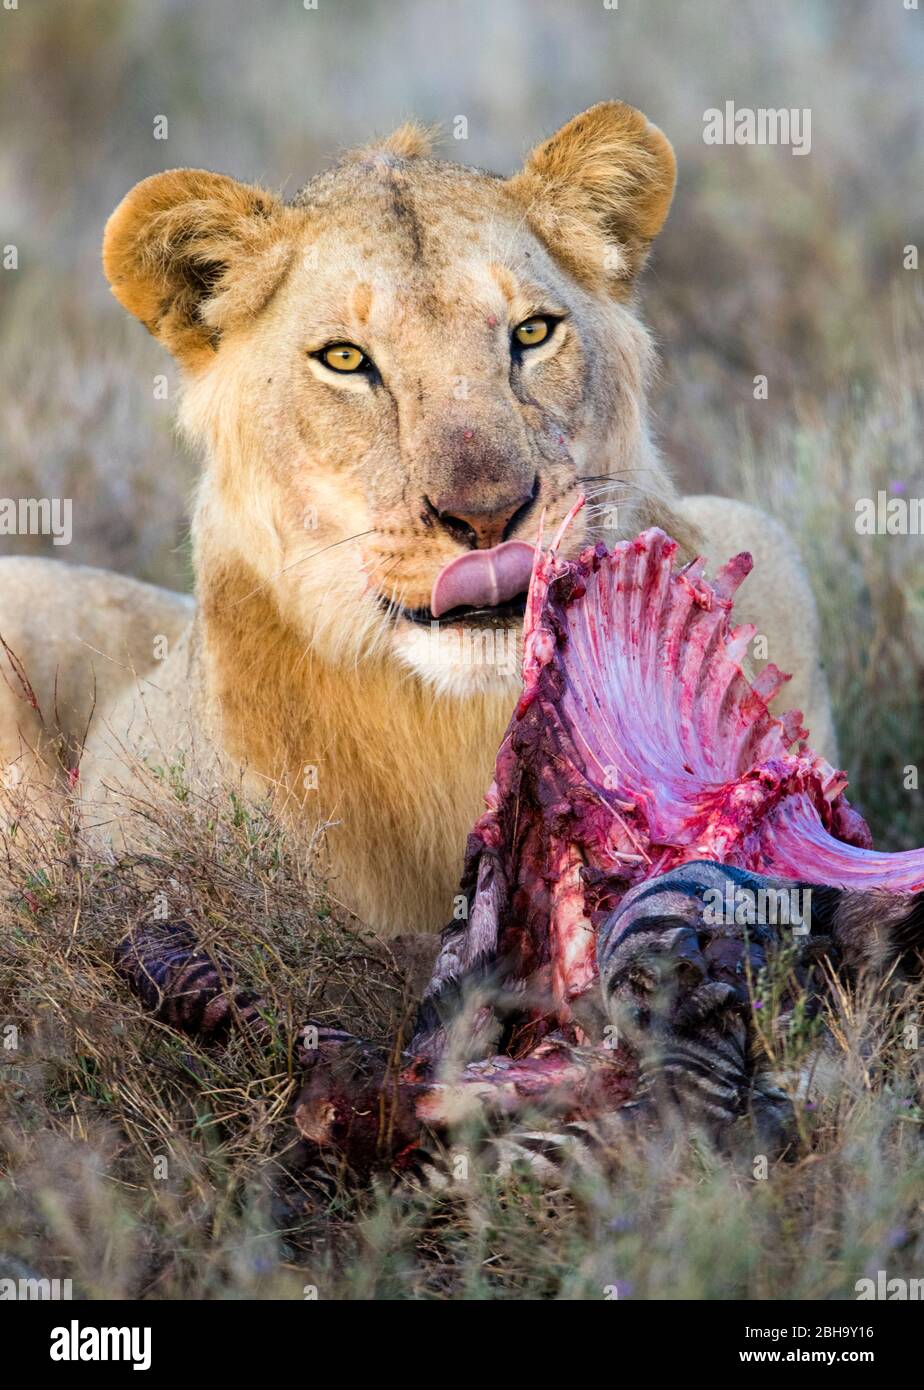 Près de la lioness (Panthera leo) manger du zébra, Ngorongoro conservation Area, Tanzanie, Afrique Banque D'Images